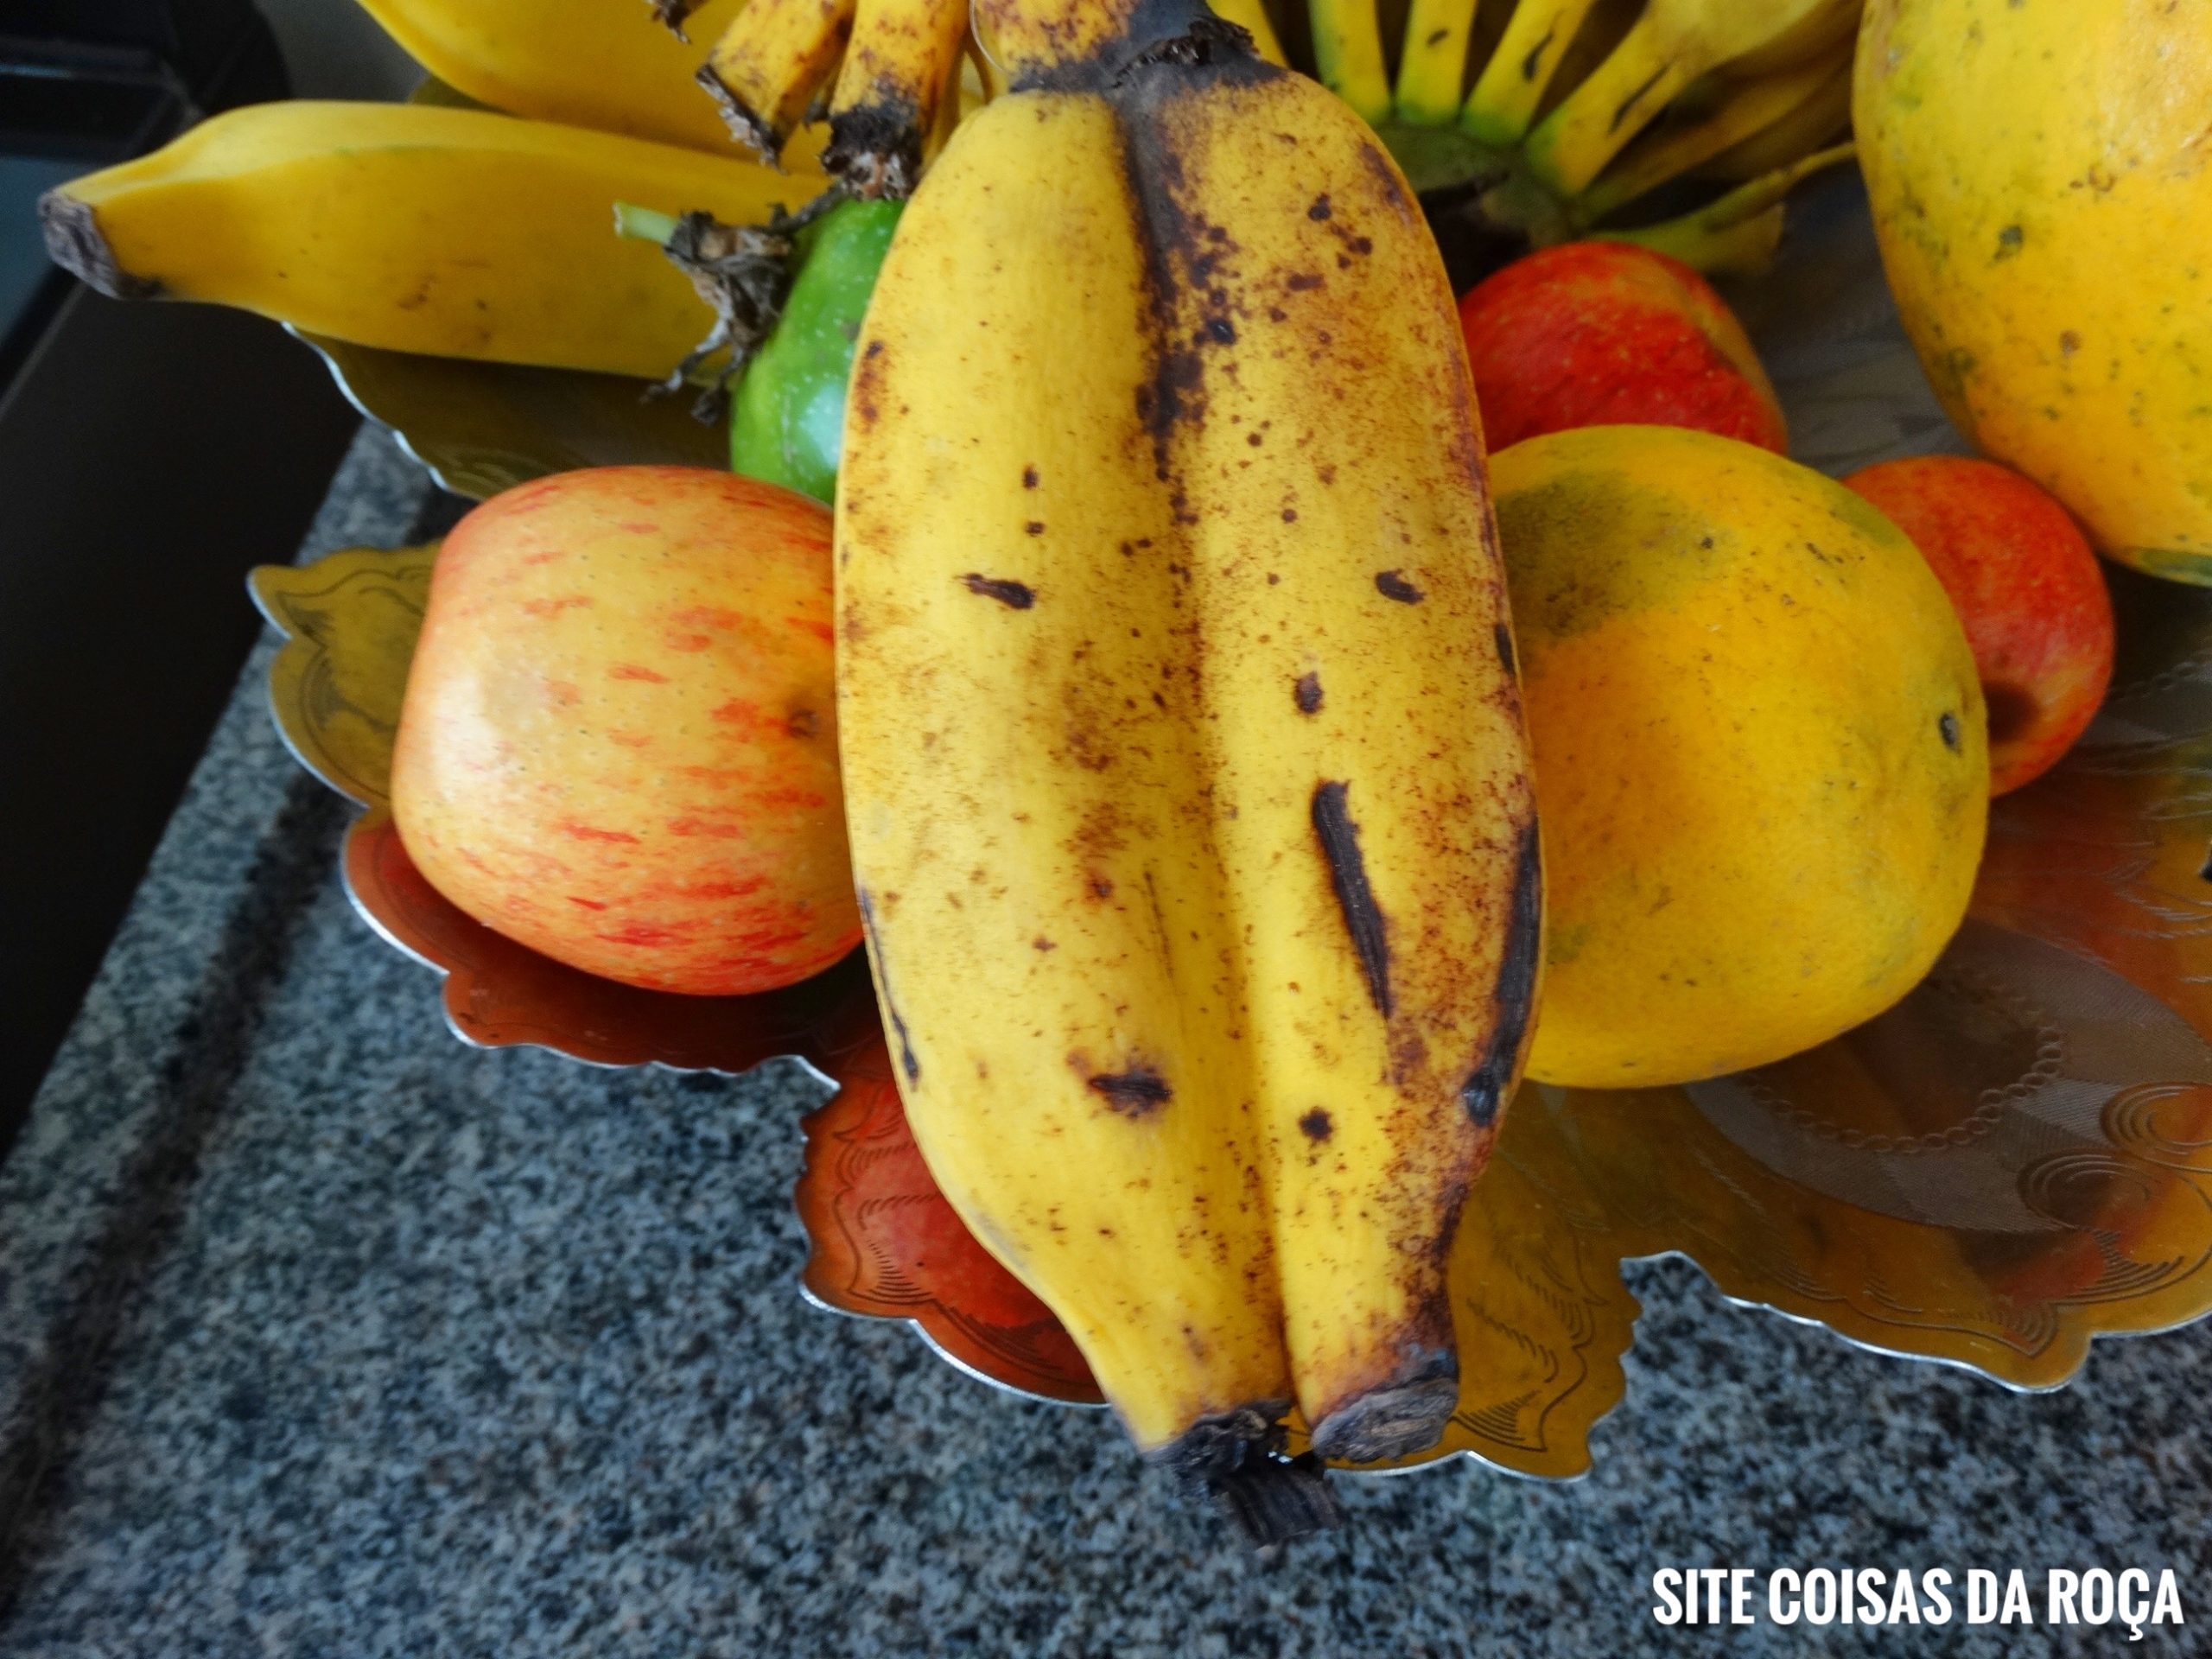 Bananas gêmeas (imagem: Evandro Marques)